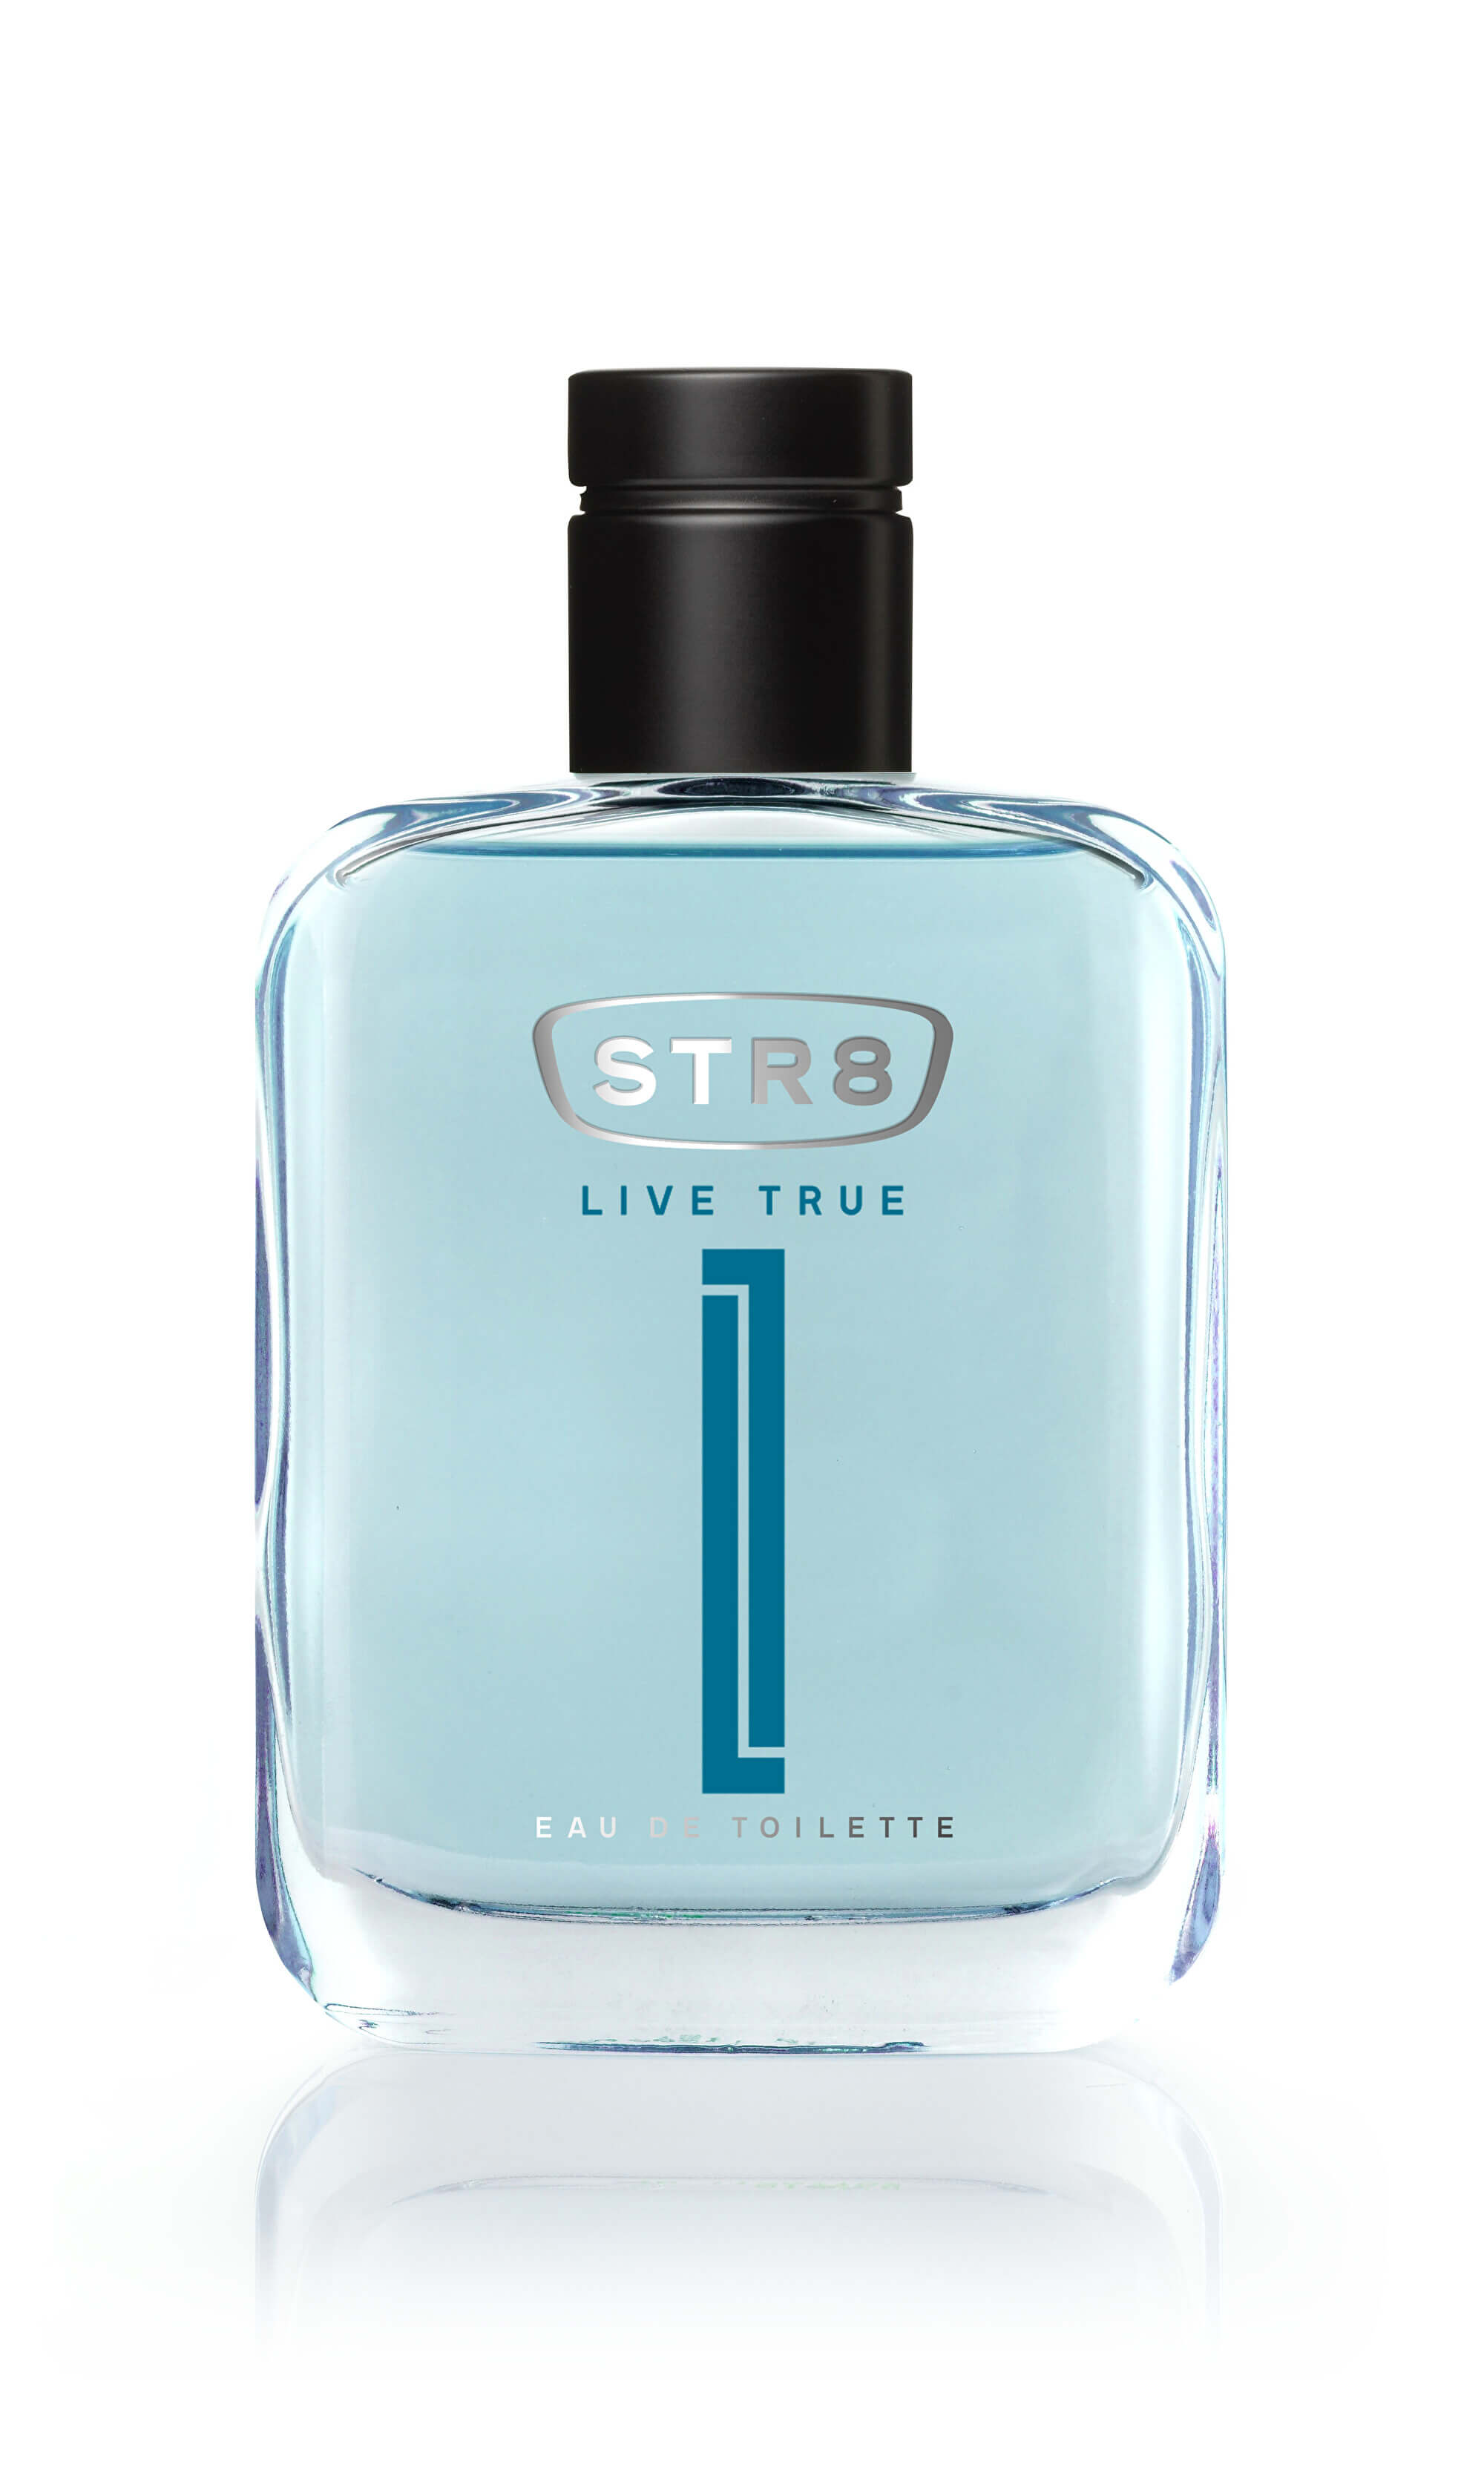 STR8 Live True - EDT 100 ml + 2 mesiace na vrátenie tovaru